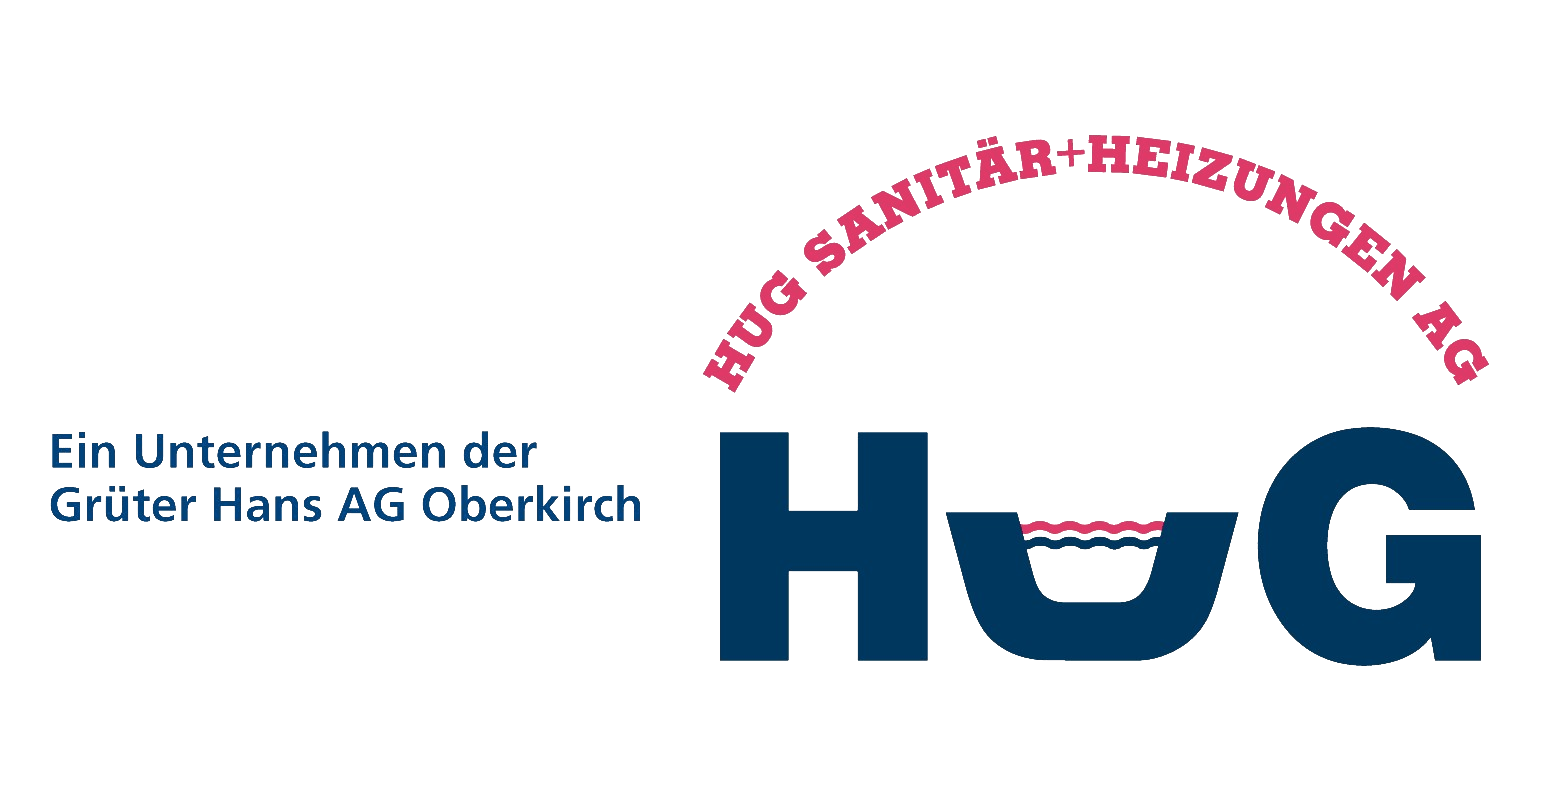 Logo Hug